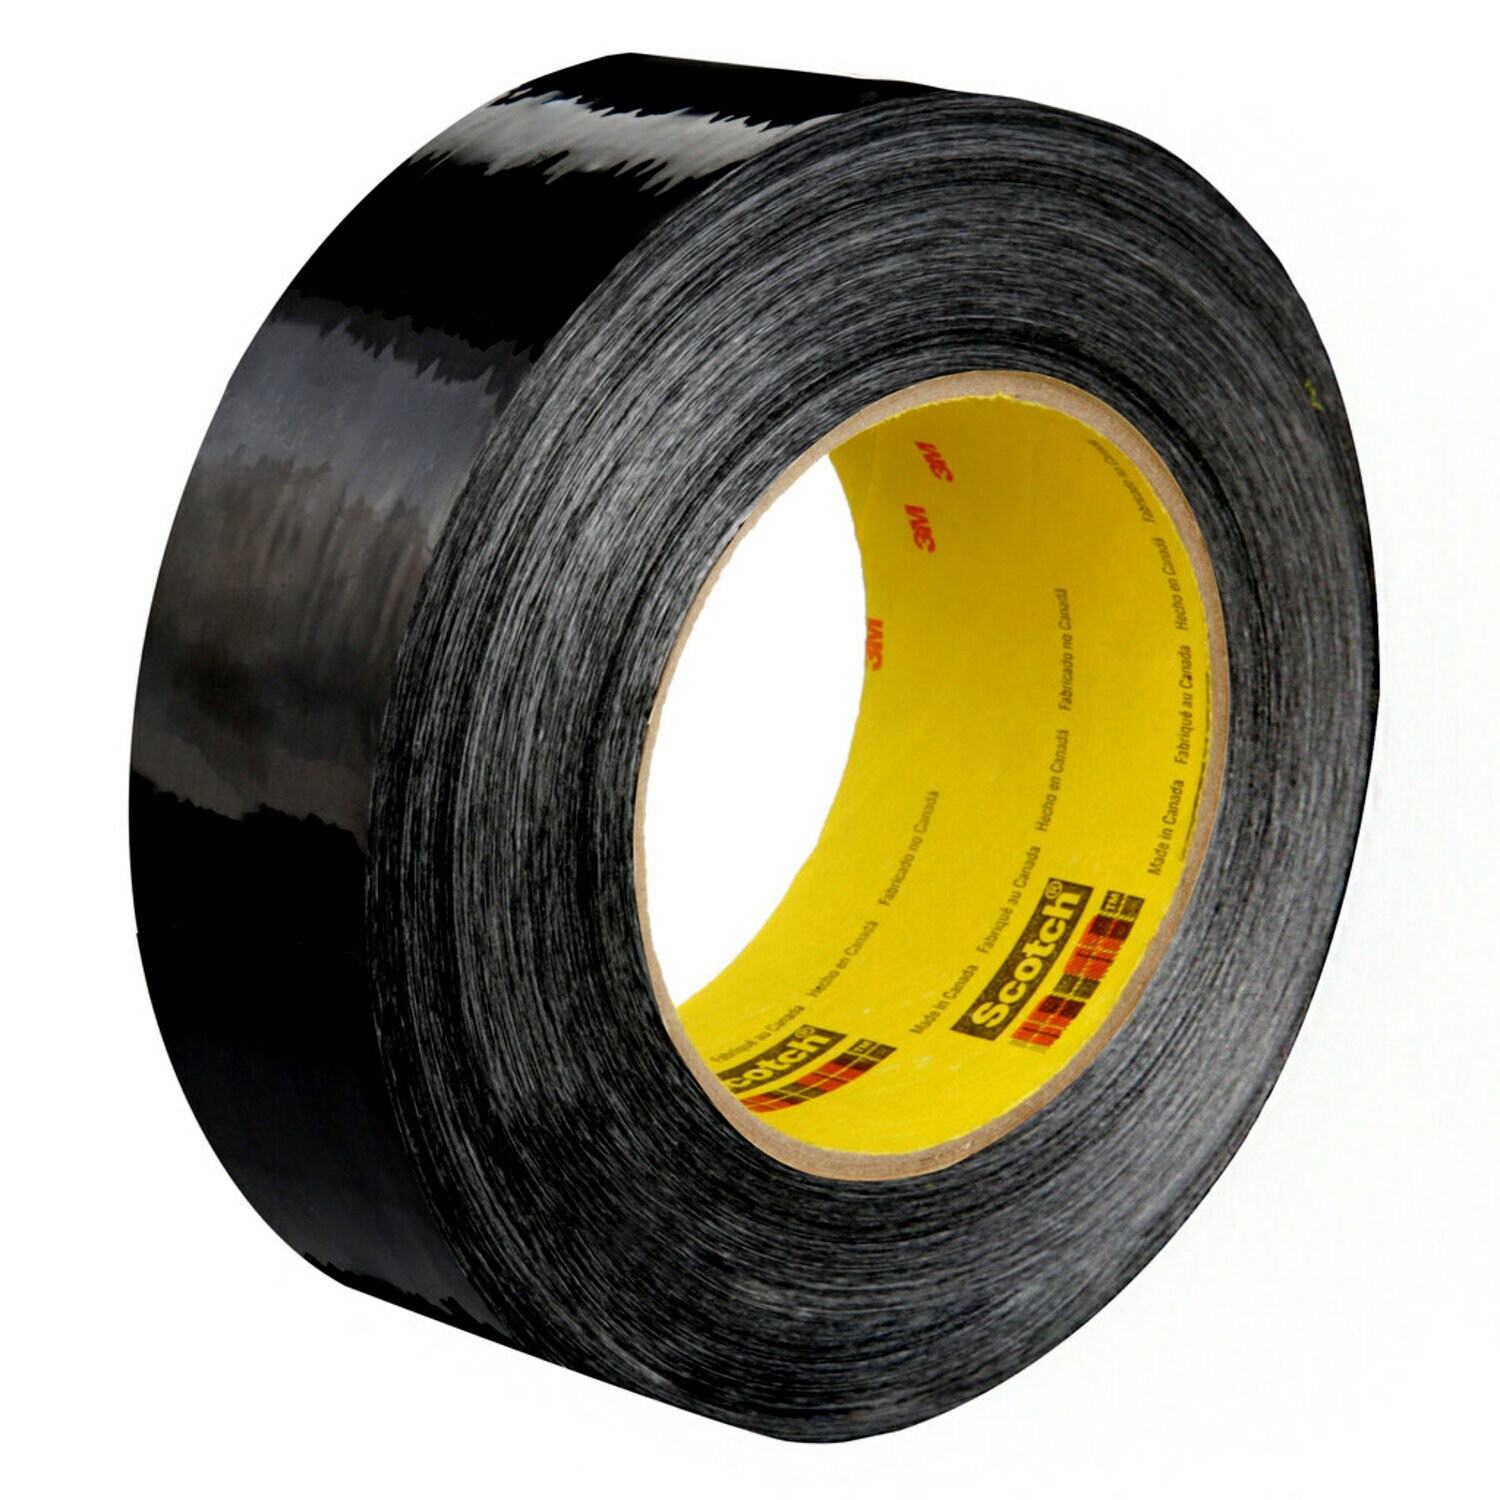 7000138272 - Scotch Filament Tape 890MSR, Black, 48 mm x 55 m, 8 mil, 1 roll per
case